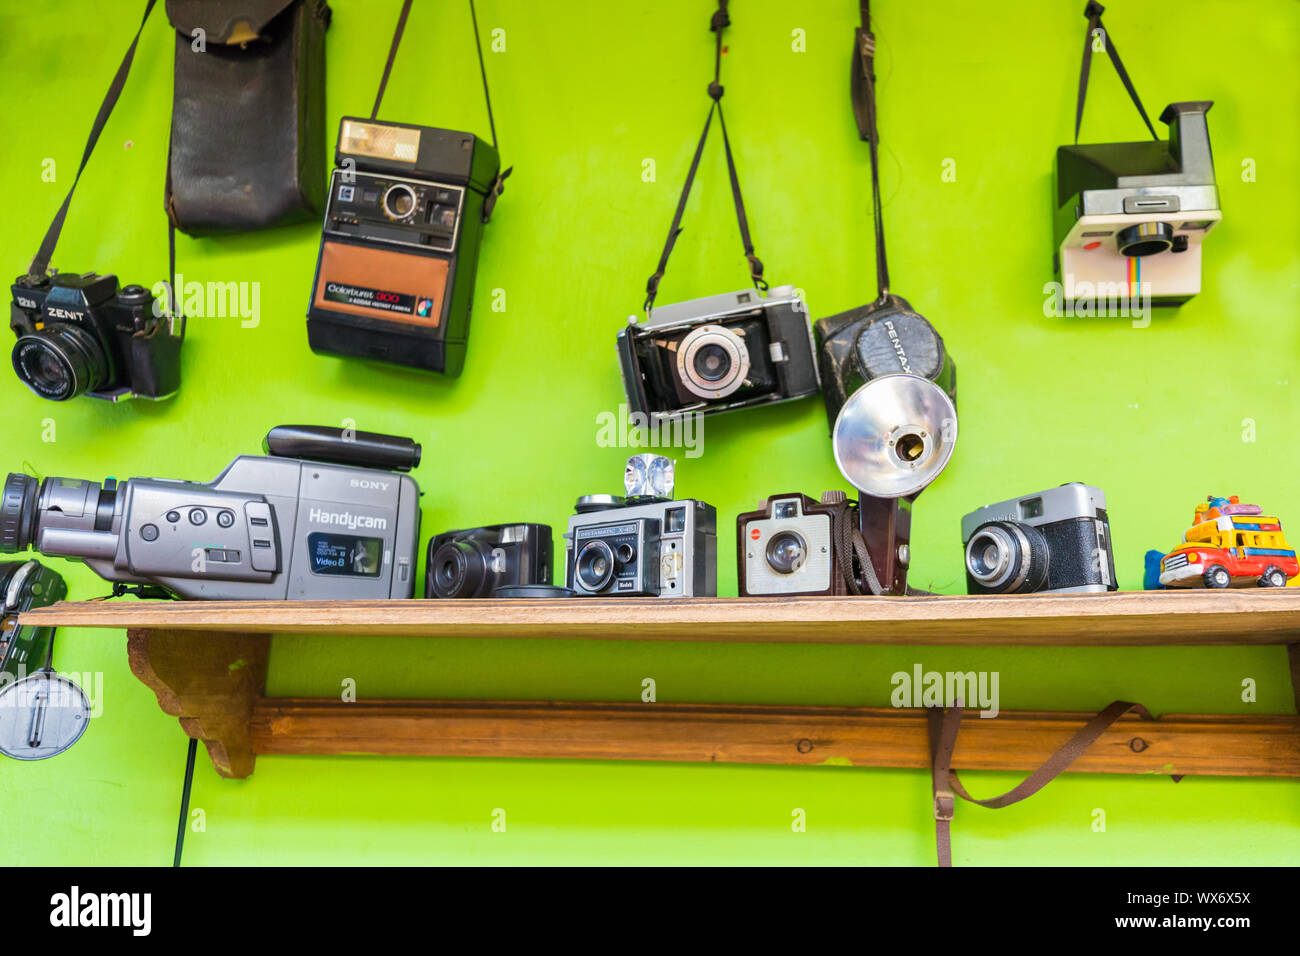 Bogota vintage cameras and video cameras Stock Photo